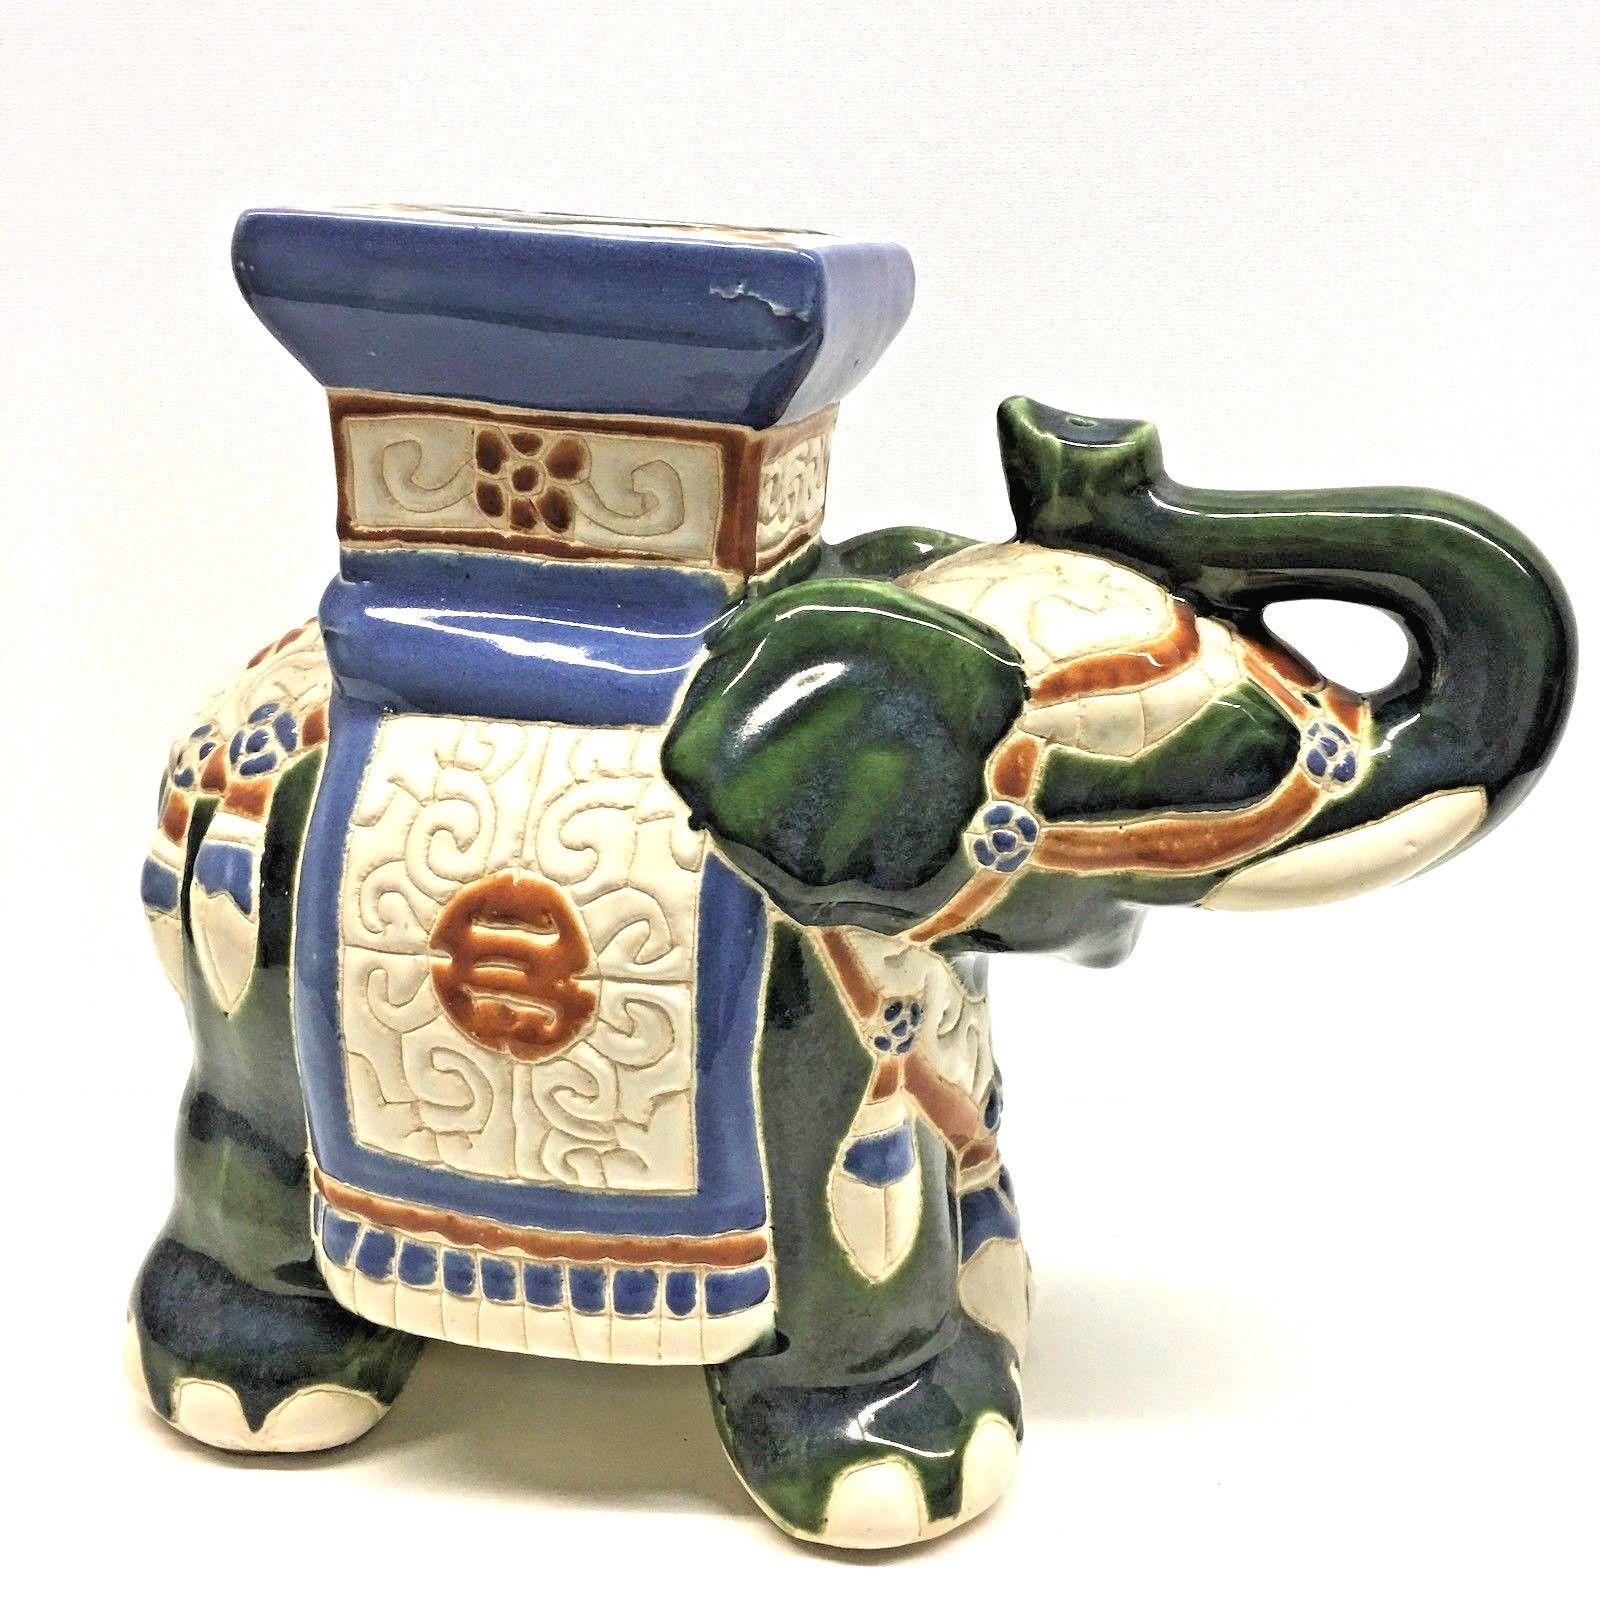 Mitte des 20. Jahrhunderts glasierter Keramik-Elefanten-Gartenhocker, Blumentopfsitz oder Beistelltisch. Handgefertigt aus Keramik. Eine schöne Ergänzung für Ihr Haus, Ihre Terrasse oder Ihren Garten.
 